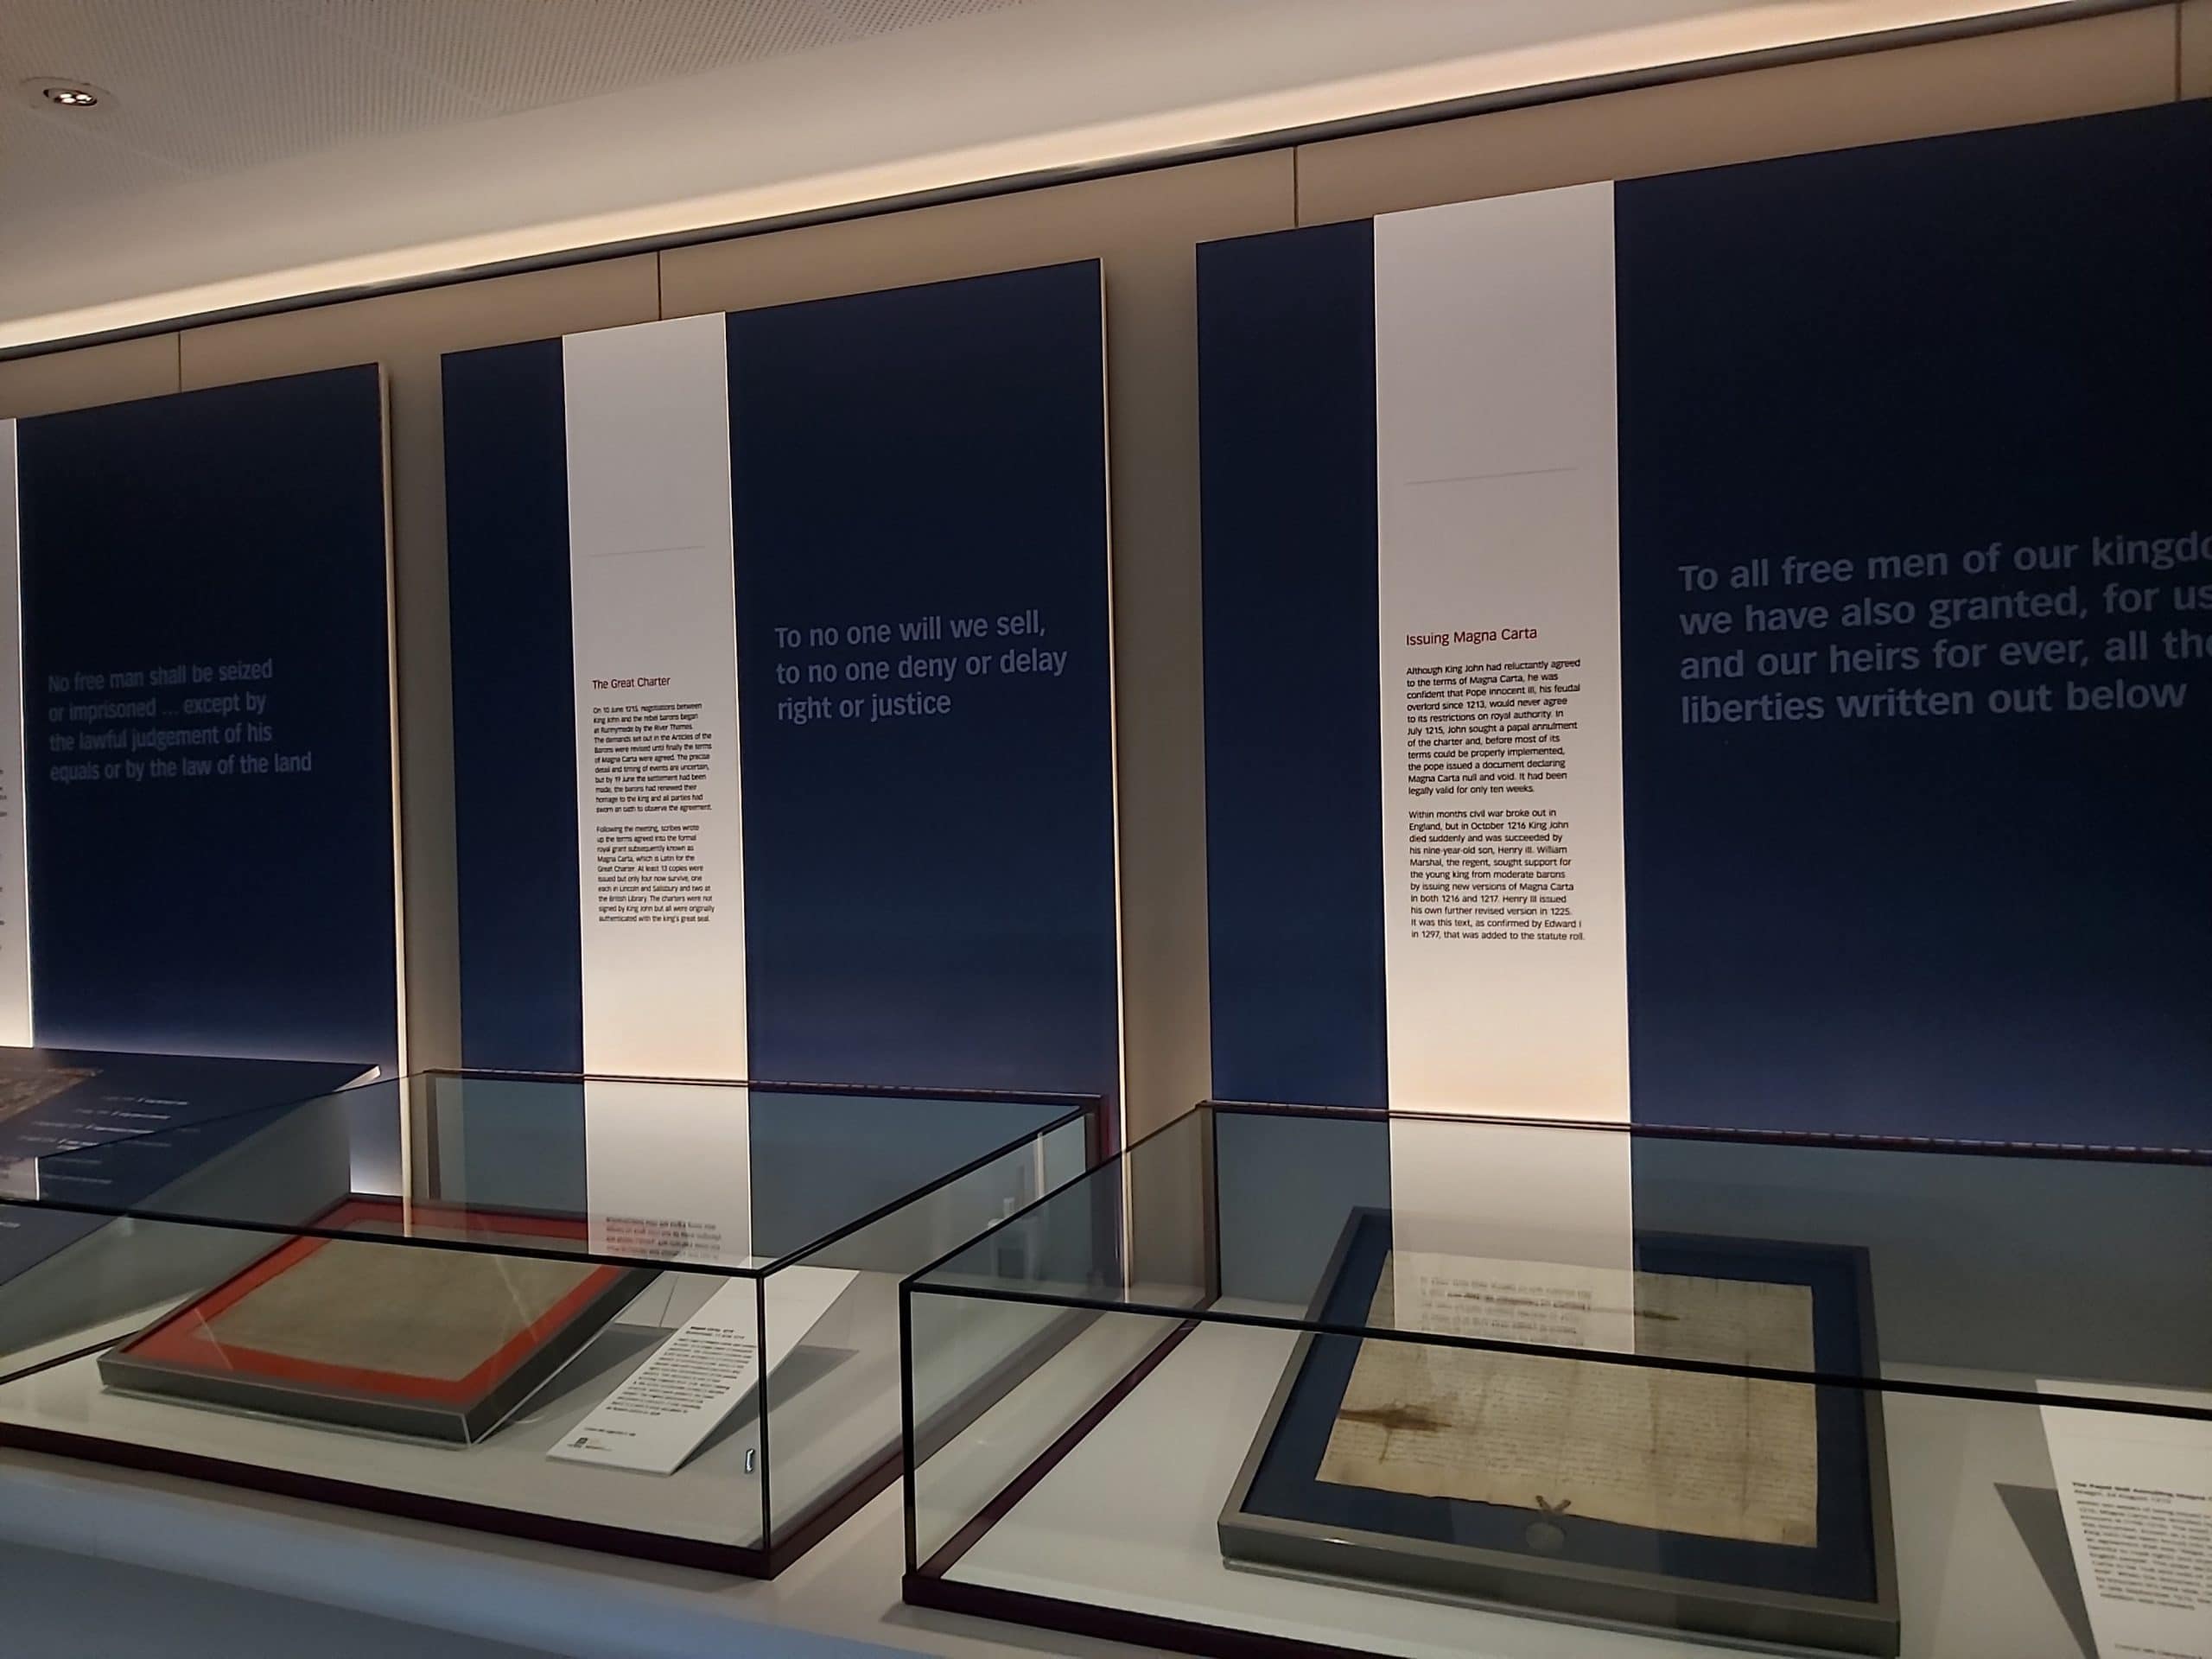 ห้องจัดแสดง Magna Carta และสารจากพระสันตปาปาอินโนเซนต์ที่สาม ประกาศว่าเอกสารดังกล่าวเป็นโมฆะ